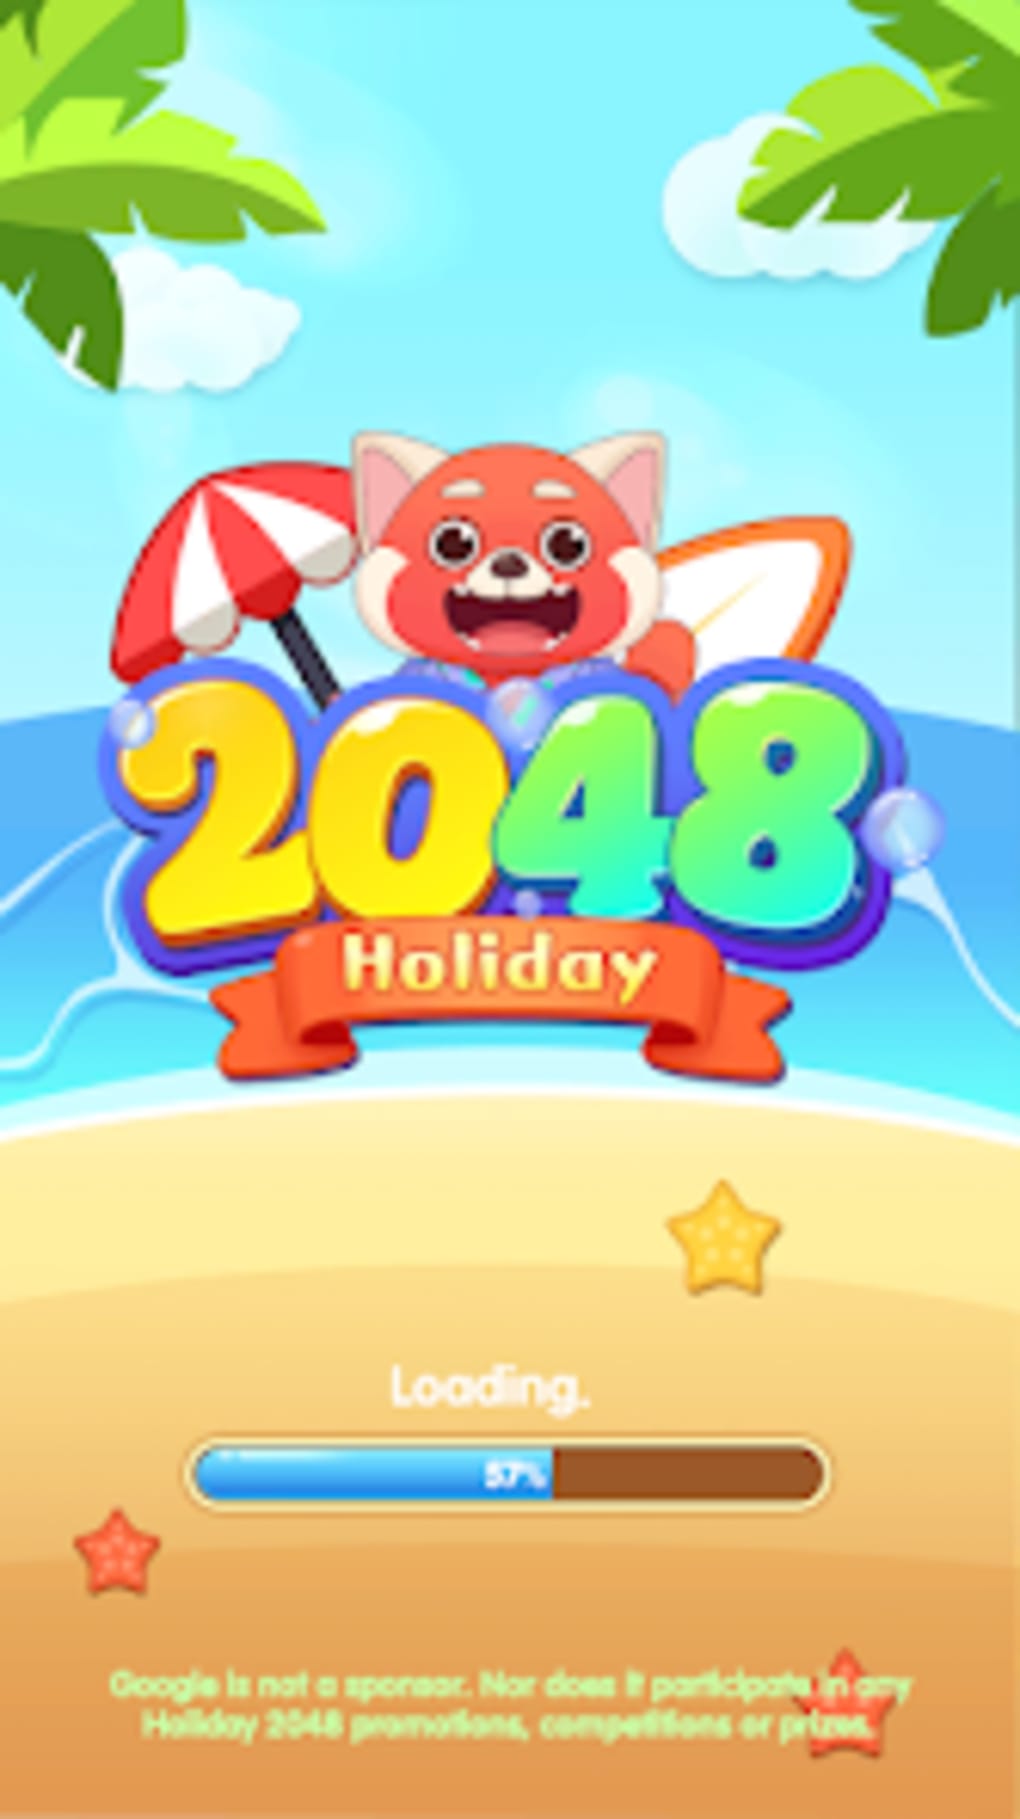 Jogue Bolha 2048 jogo online grátis